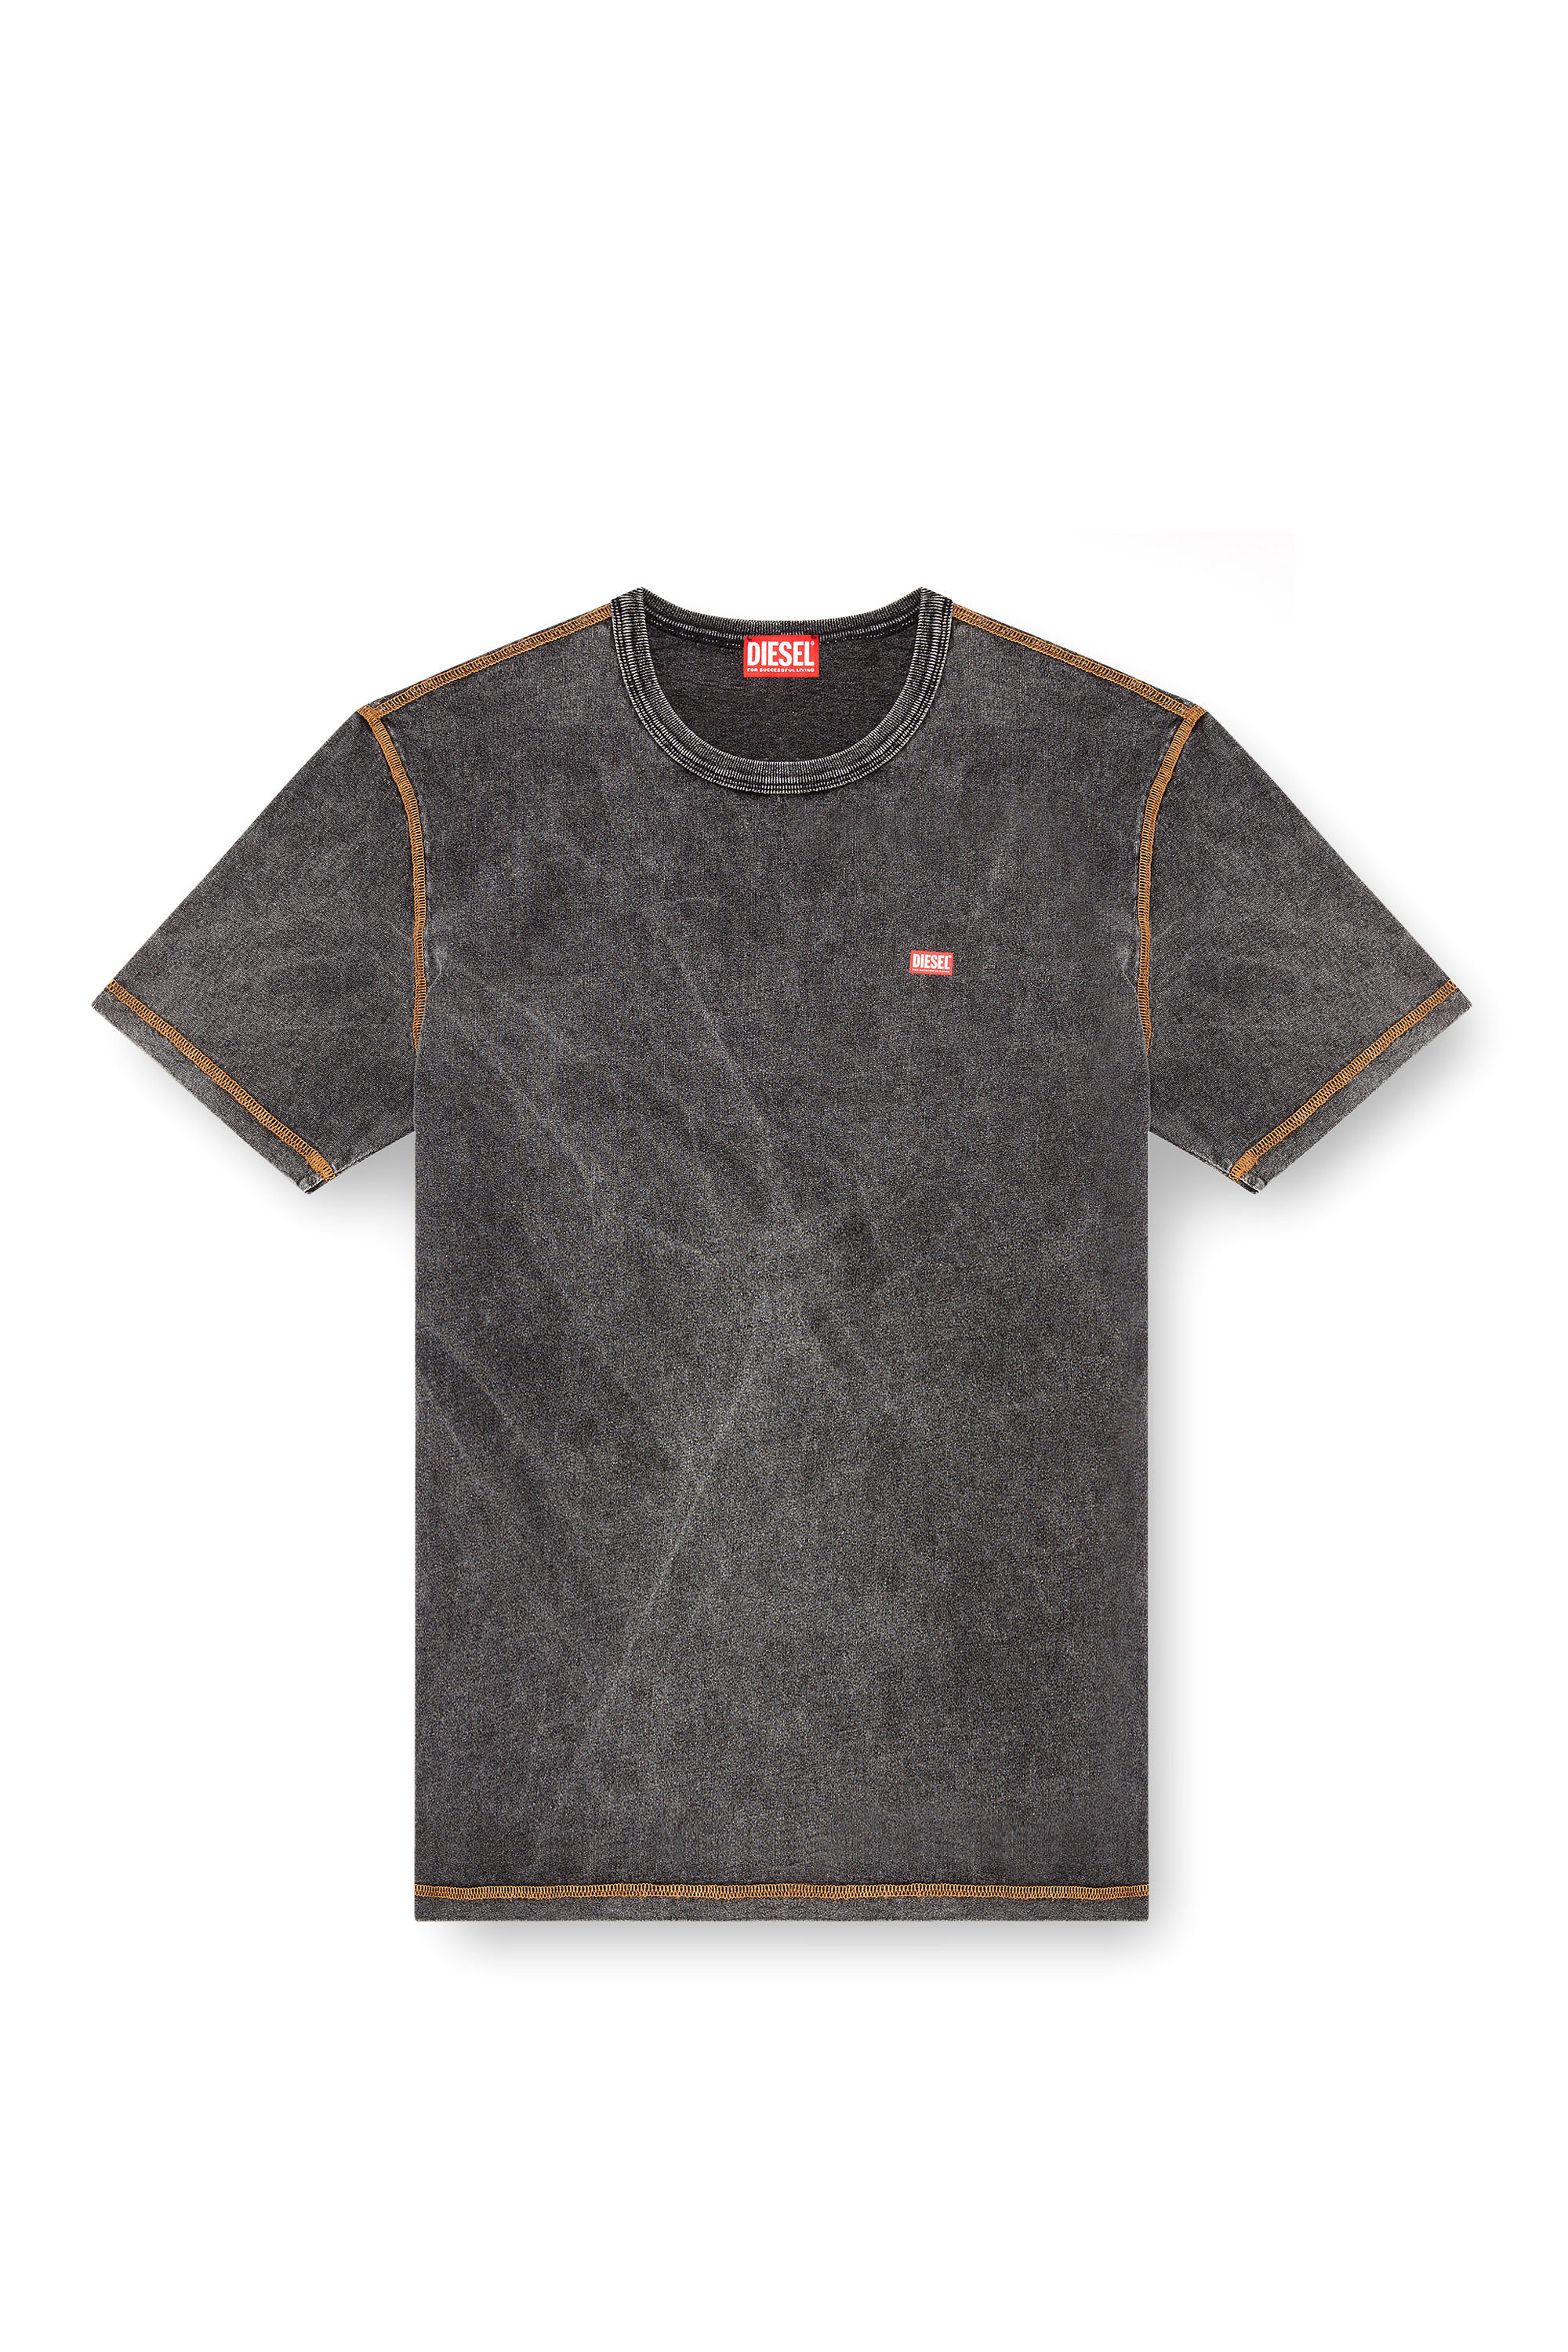 Diesel - T-ADJUST-Q12, Male T-shirt with denim effect in ブラック - Image 3